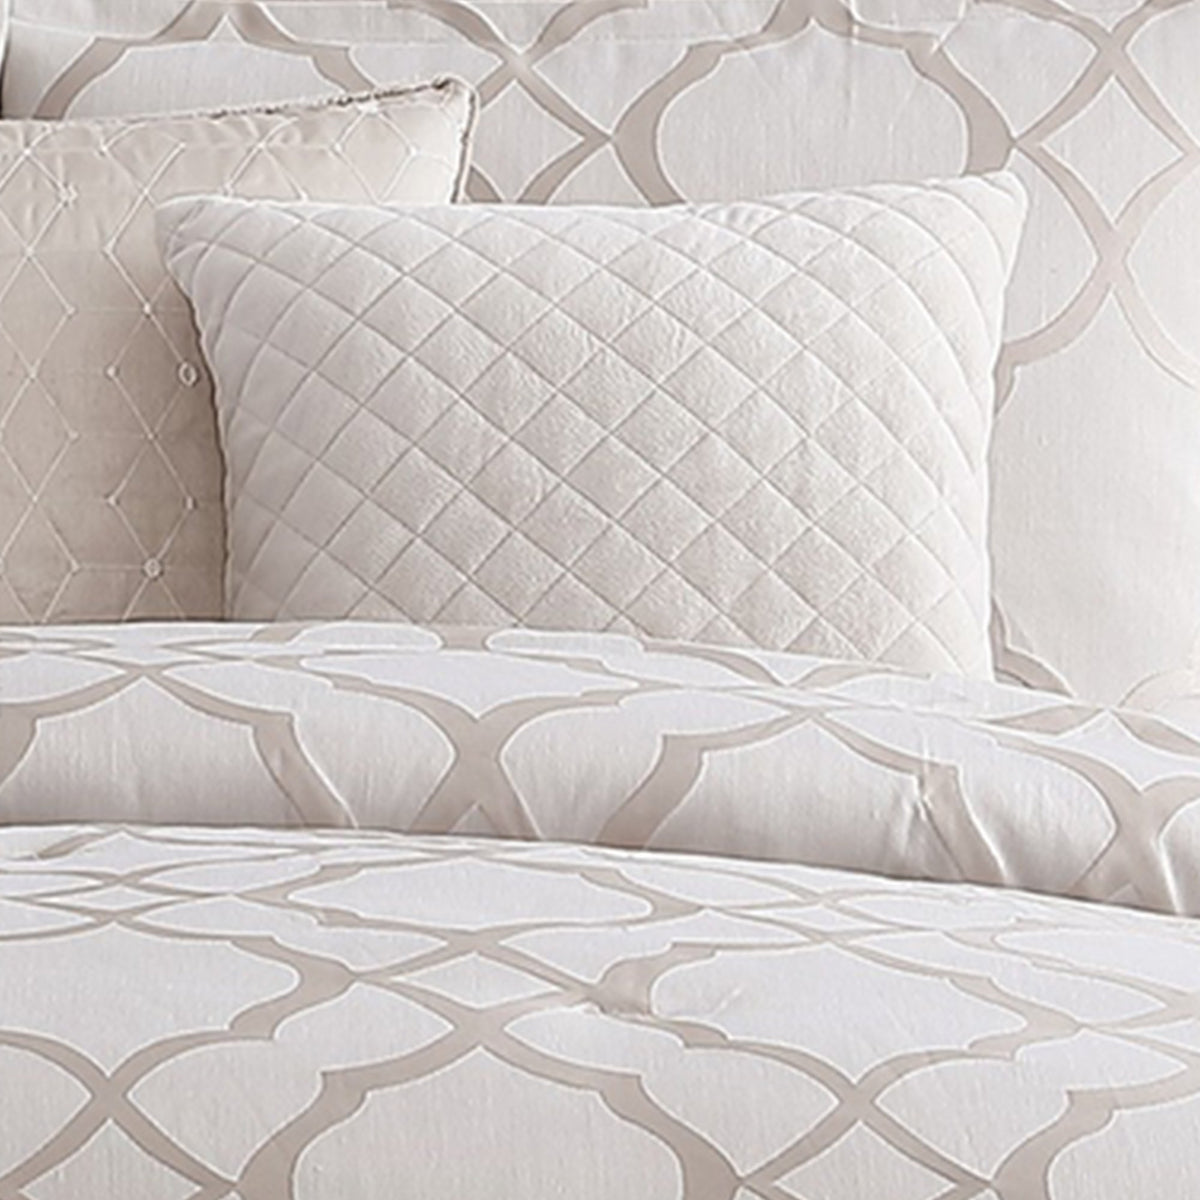 9 Piece Queen Size Fabric Comforter Set with Quatrefoil Prints, White - BM225202